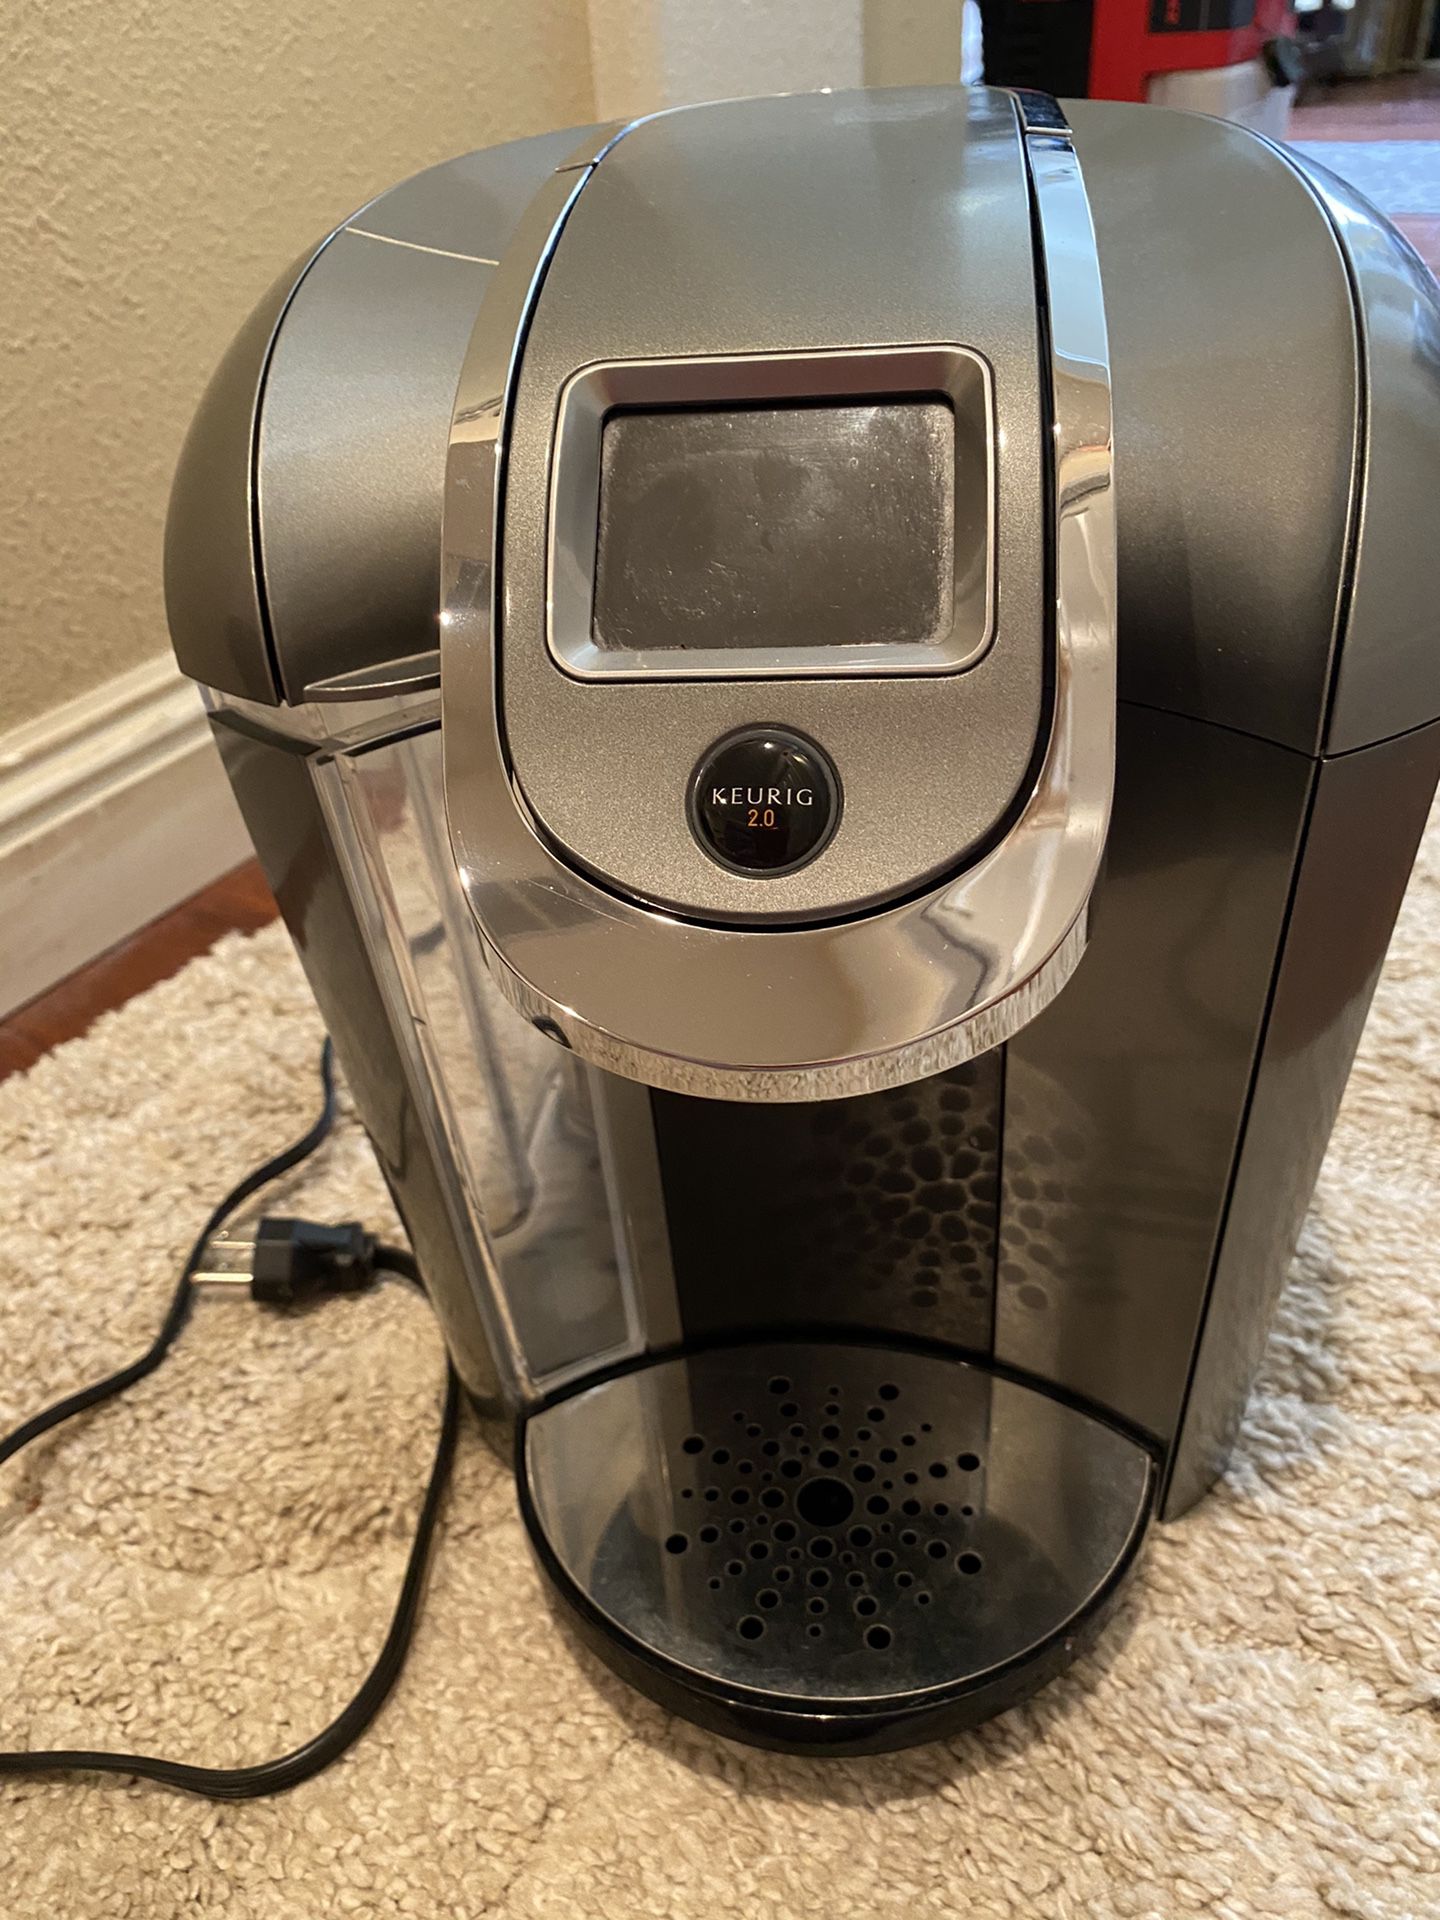 Full Sized Keurig Coffee Maker Pods Like New!